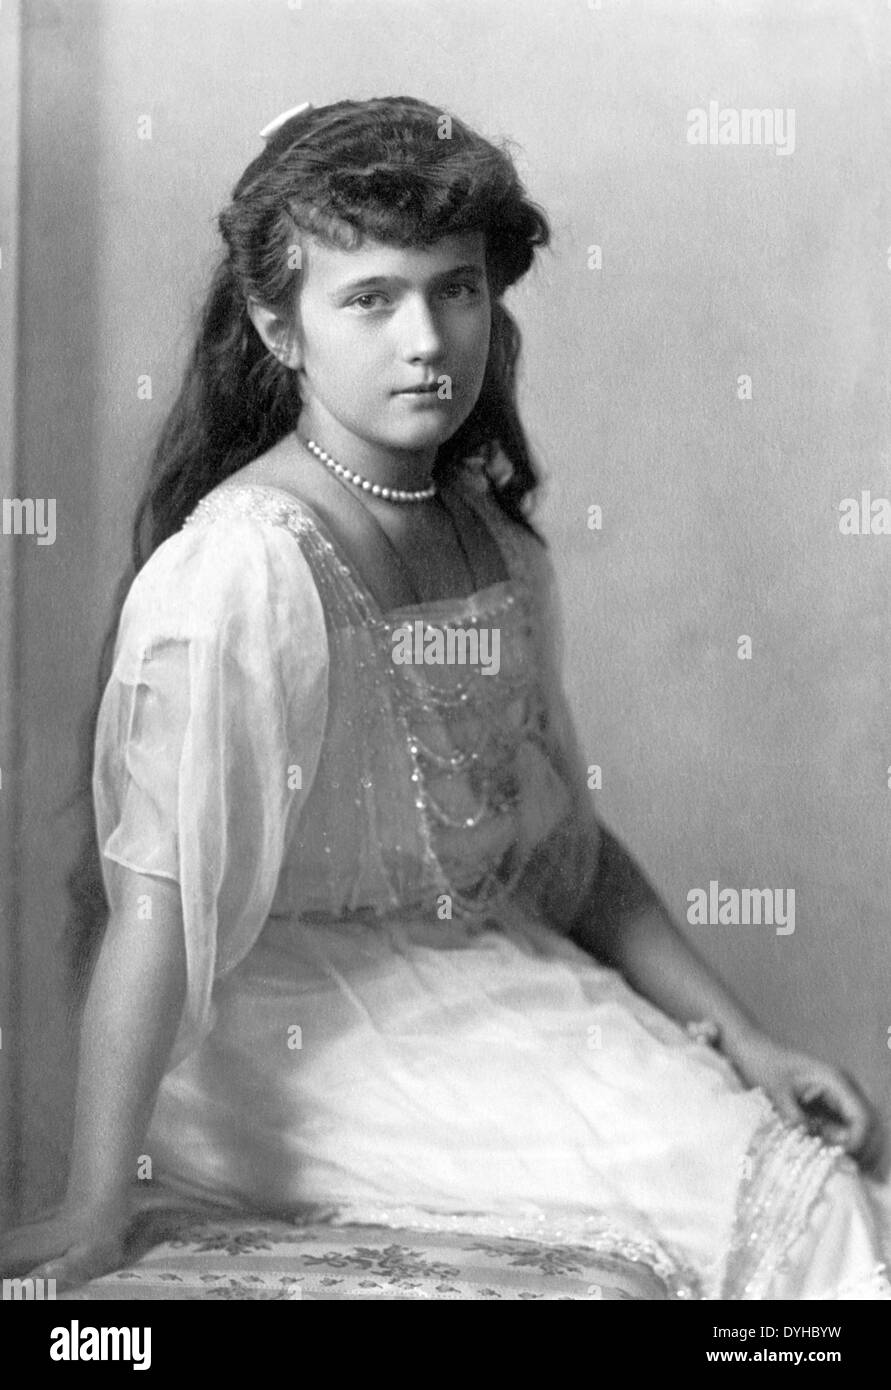 La granduchessa ANASTASIA NIKOLAEVNA della Russia (1901-1918) più giovane figlia  dello Zar Nicola II, circa 1914 Foto stock - Alamy